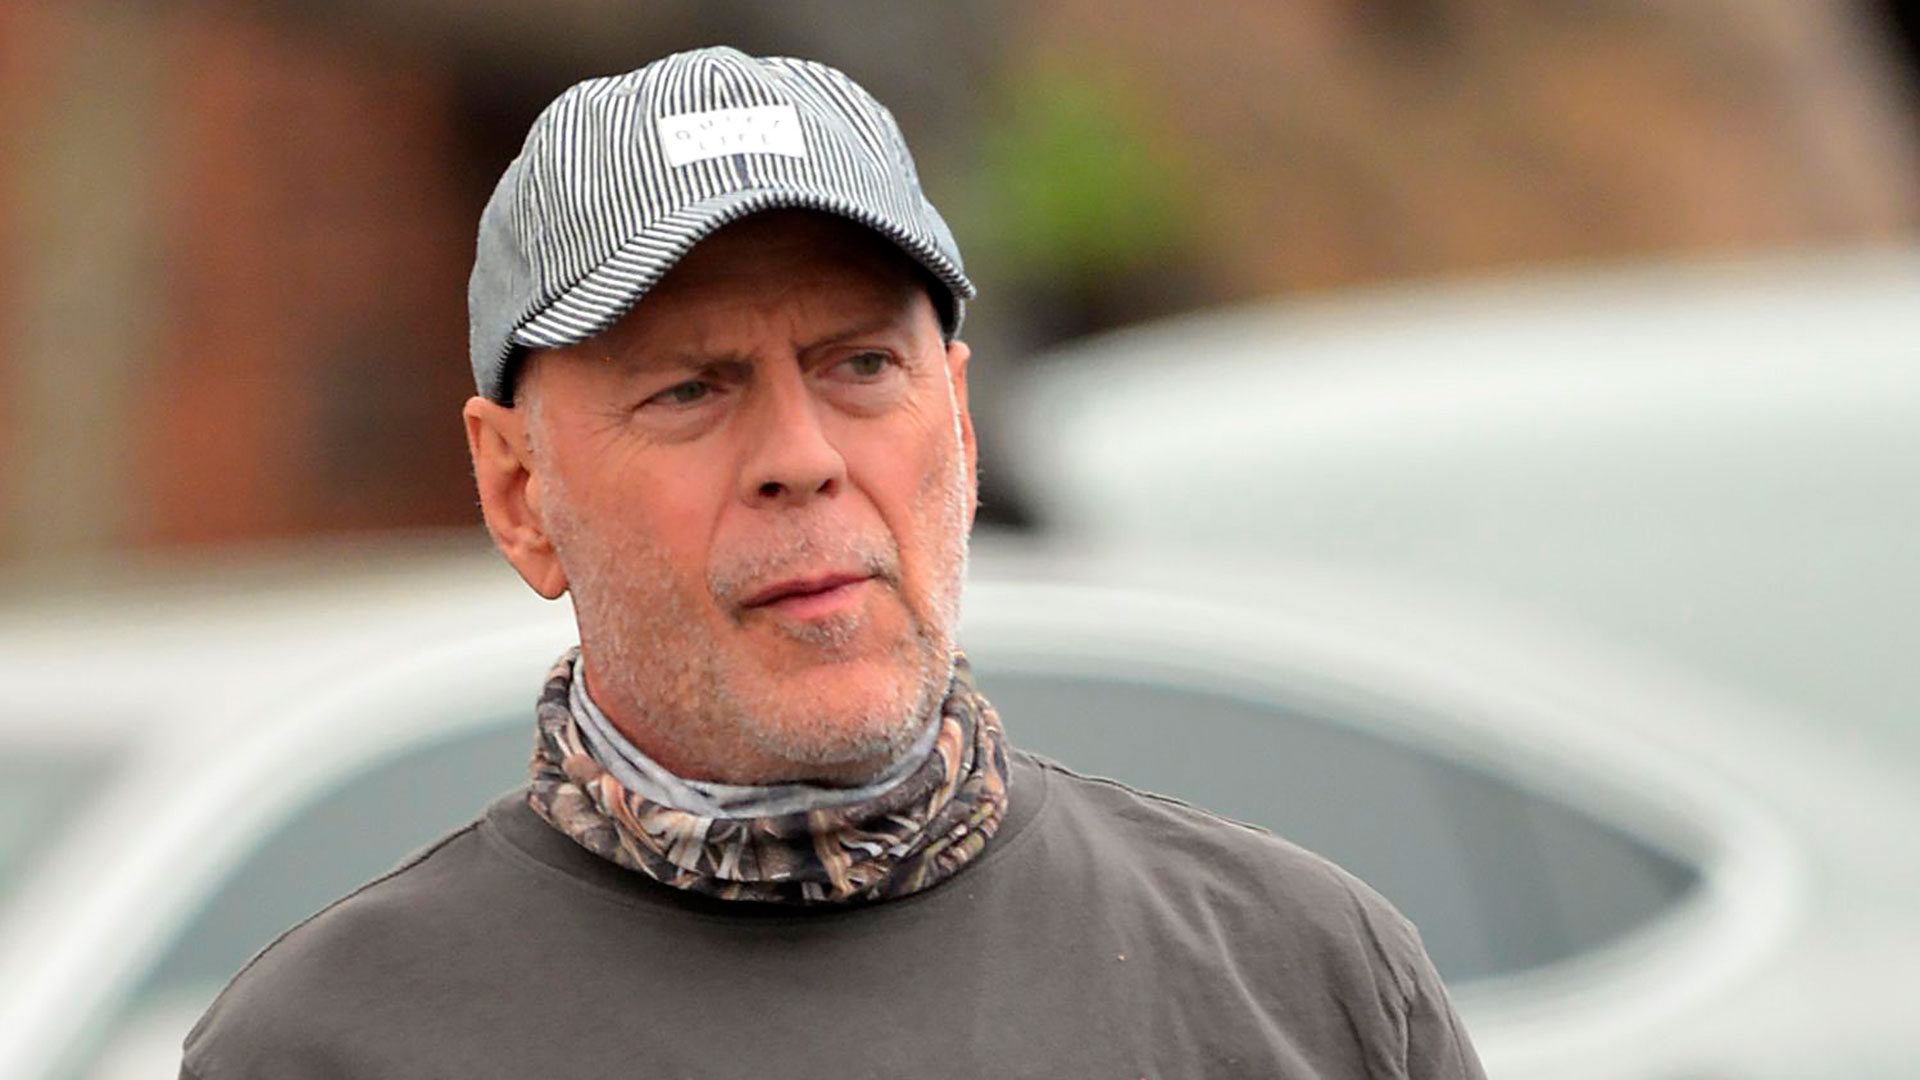 “Fue una mala decisión”: Bruce Willis pidió disculpas por no negarse a usar mascarilla (The Grosby Group)